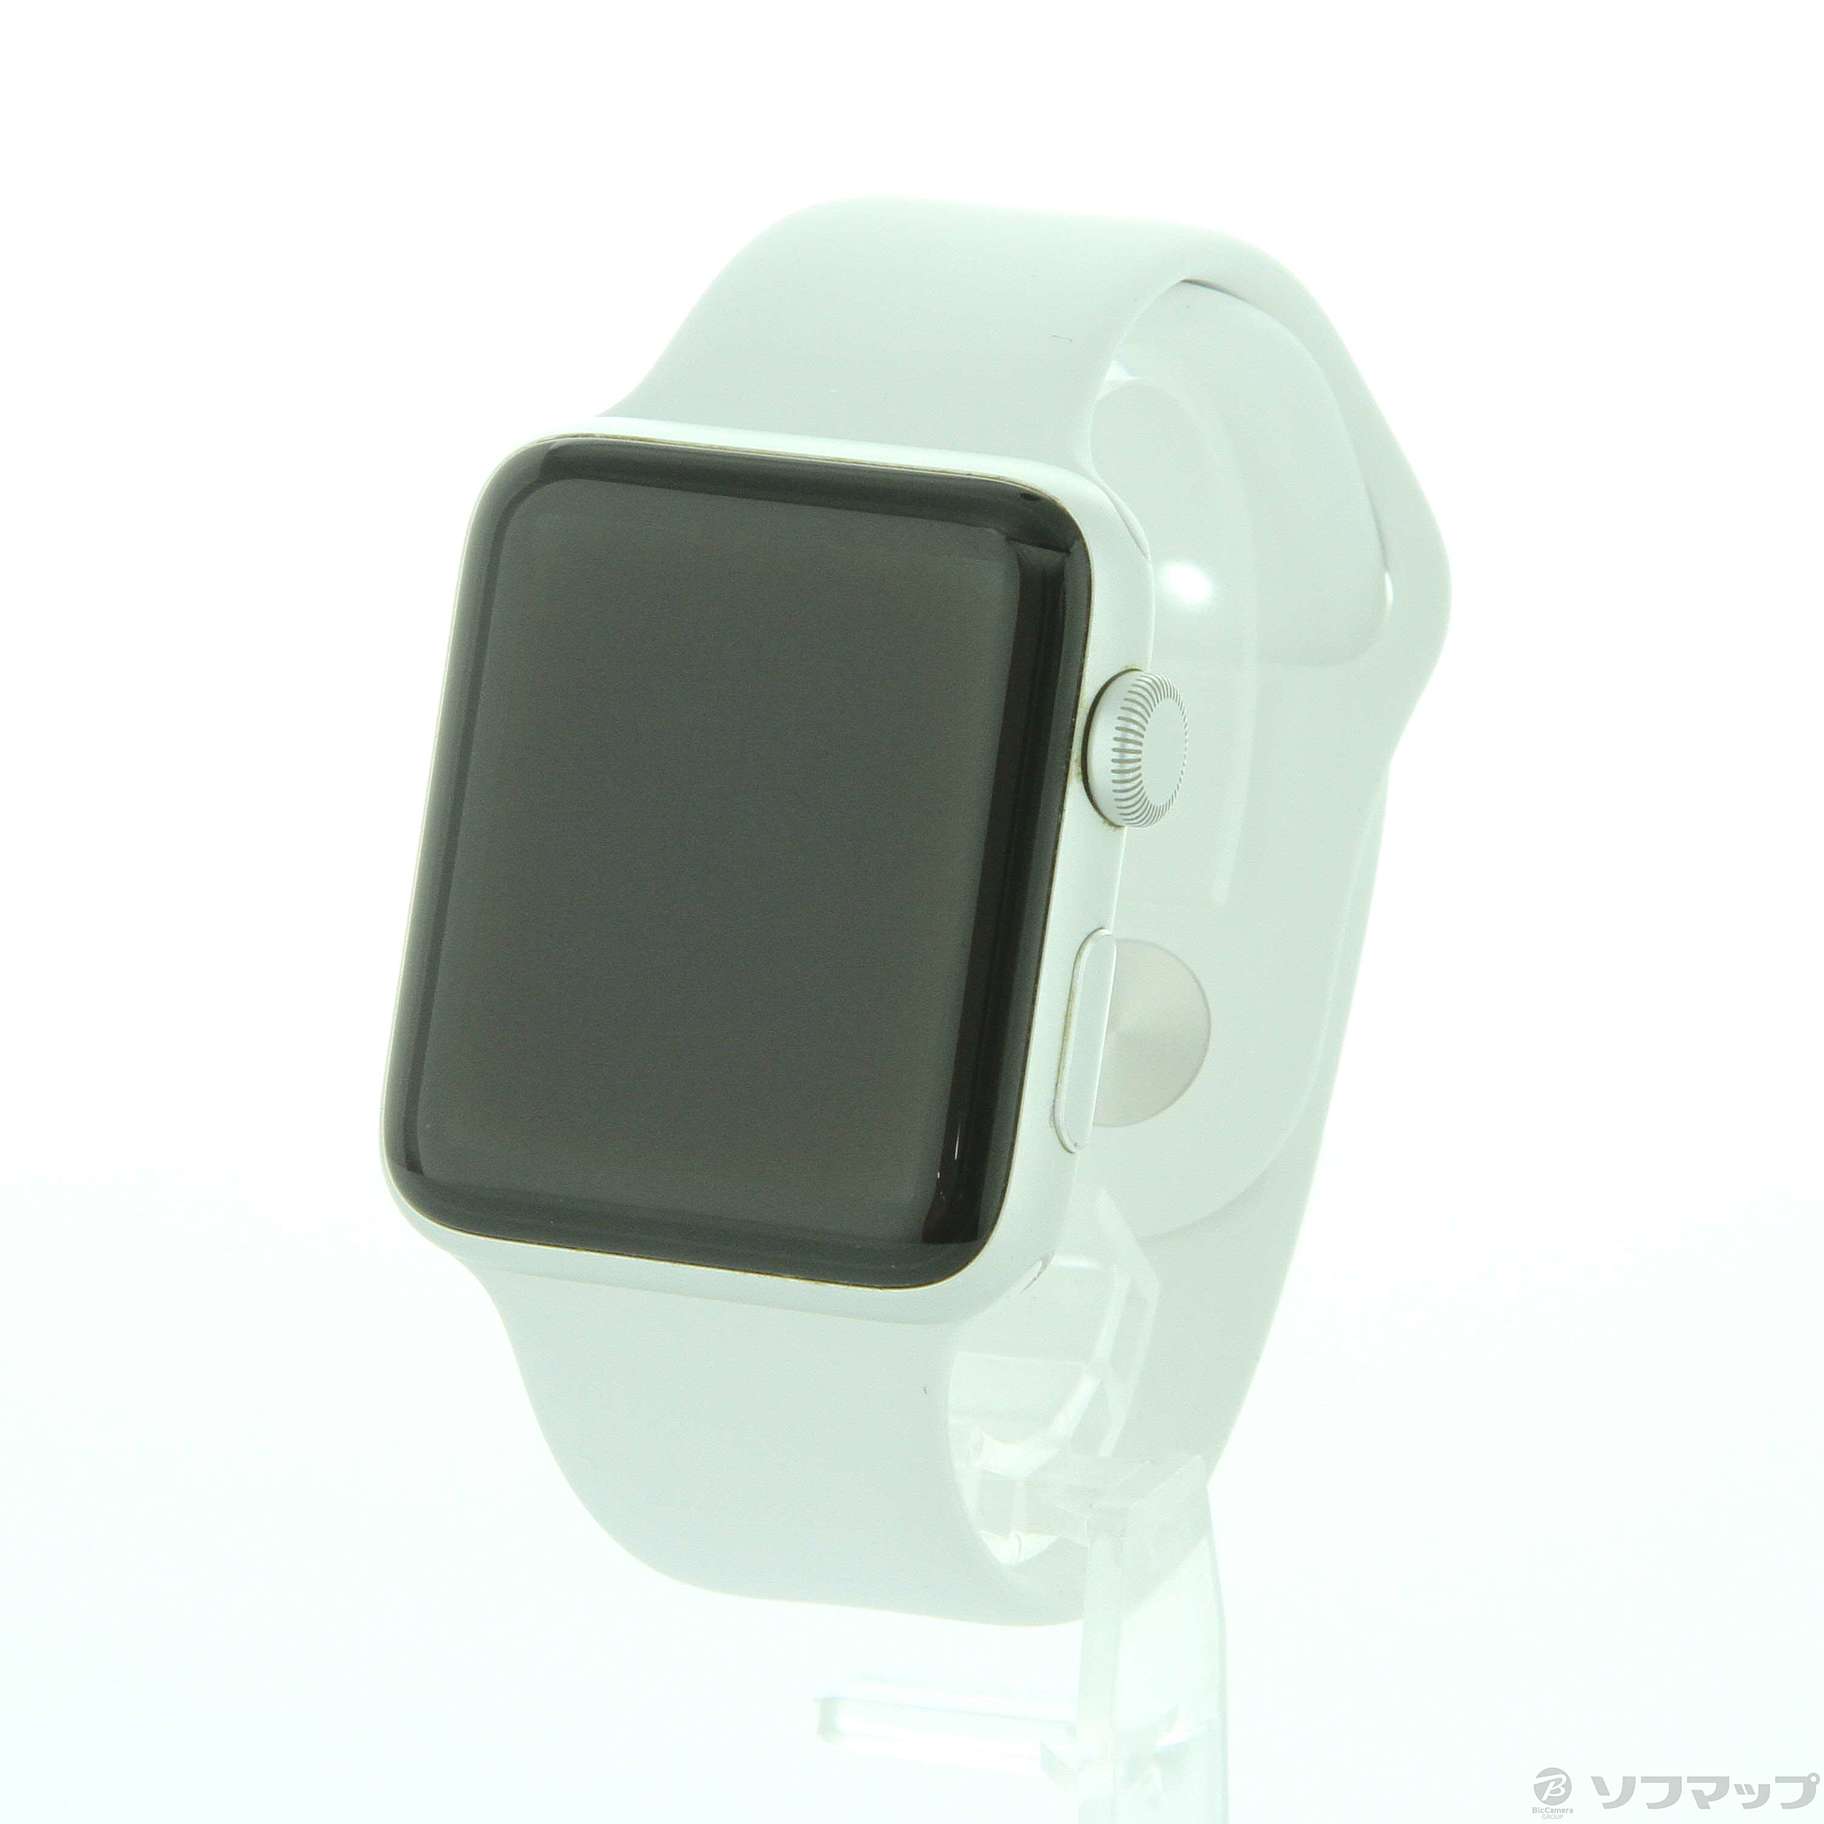 中古品〕 Apple Watch Series 2 42mm シルバーアルミニウムケース